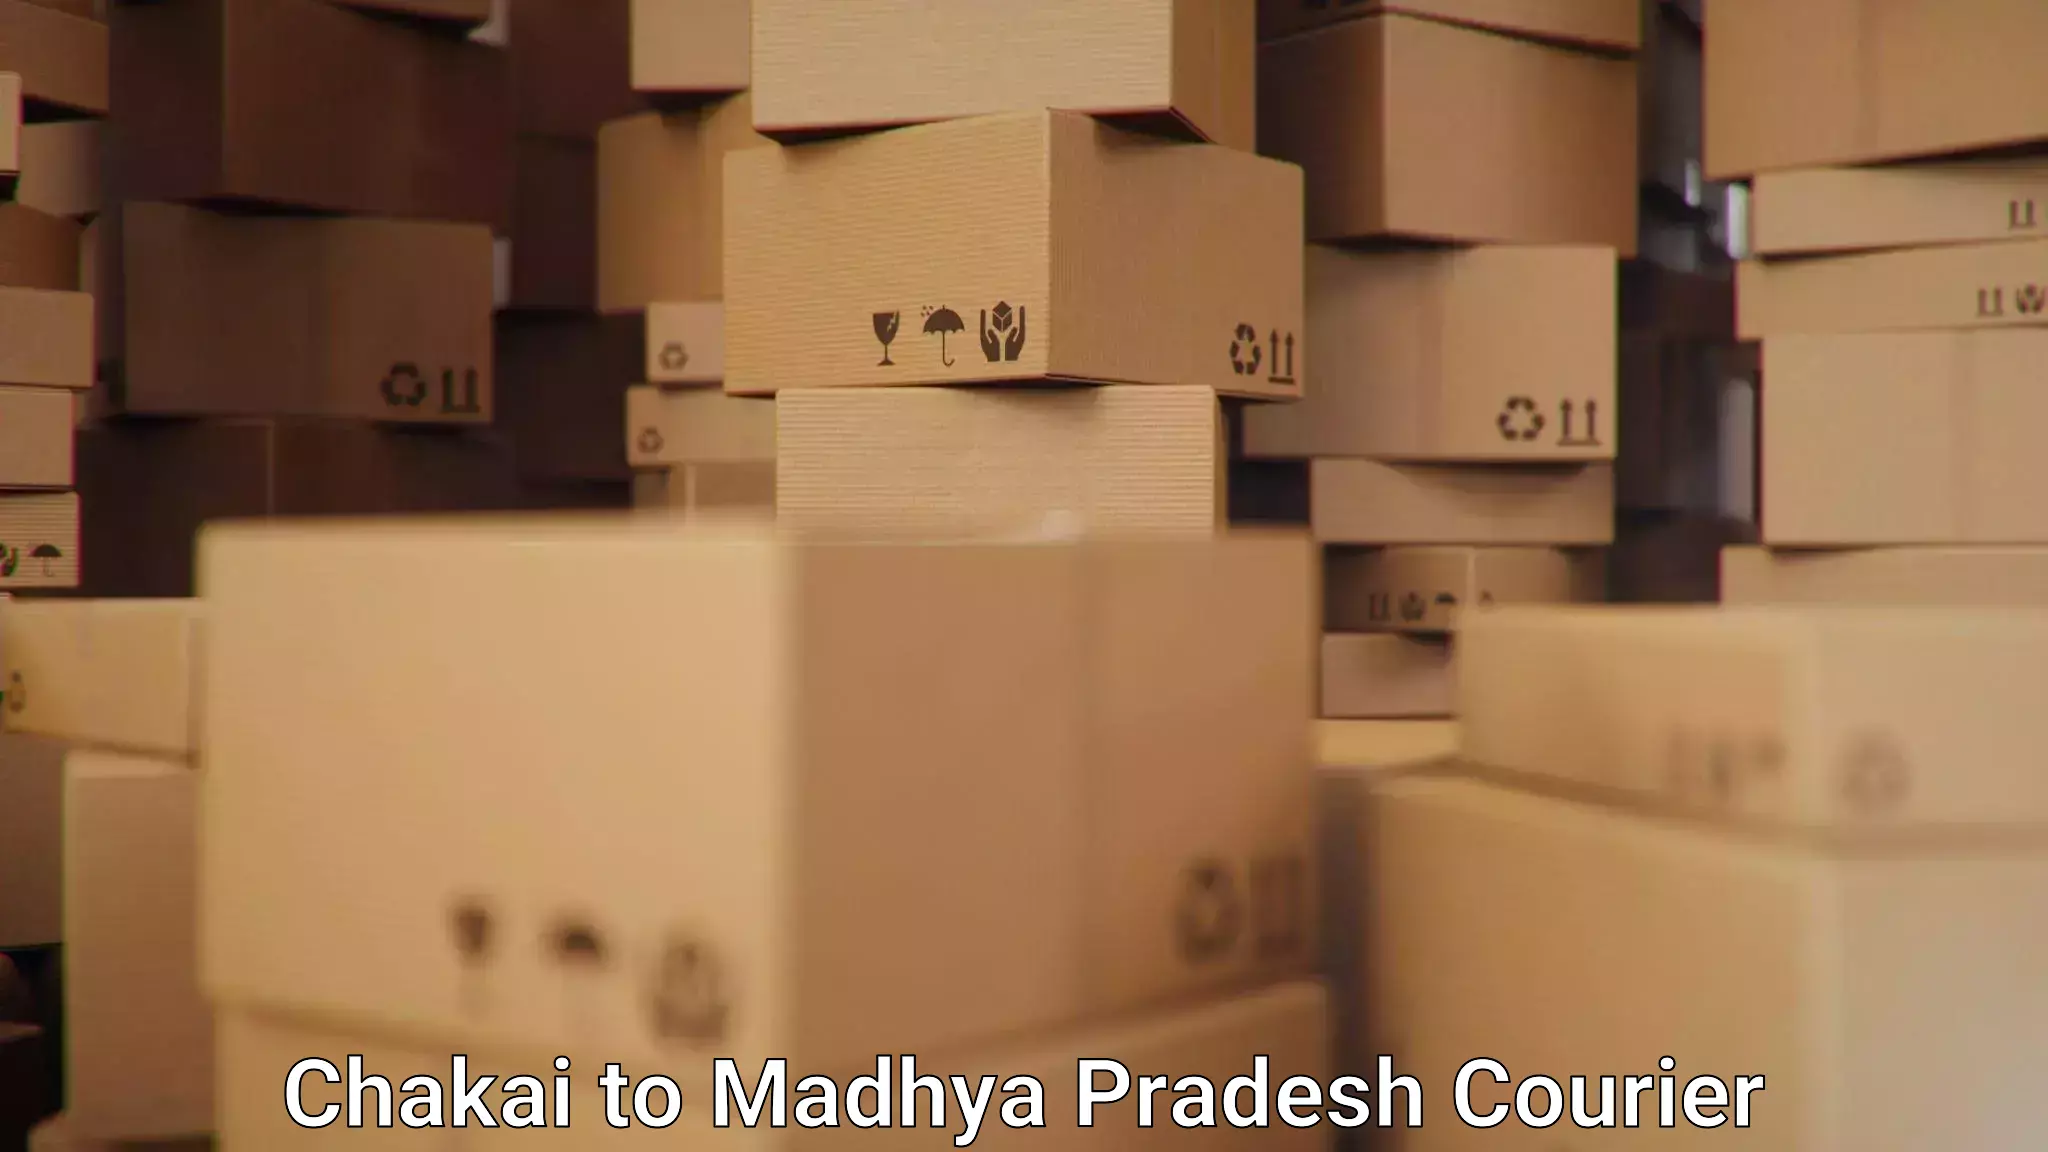 Cost-effective courier options Chakai to Madhya Pradesh